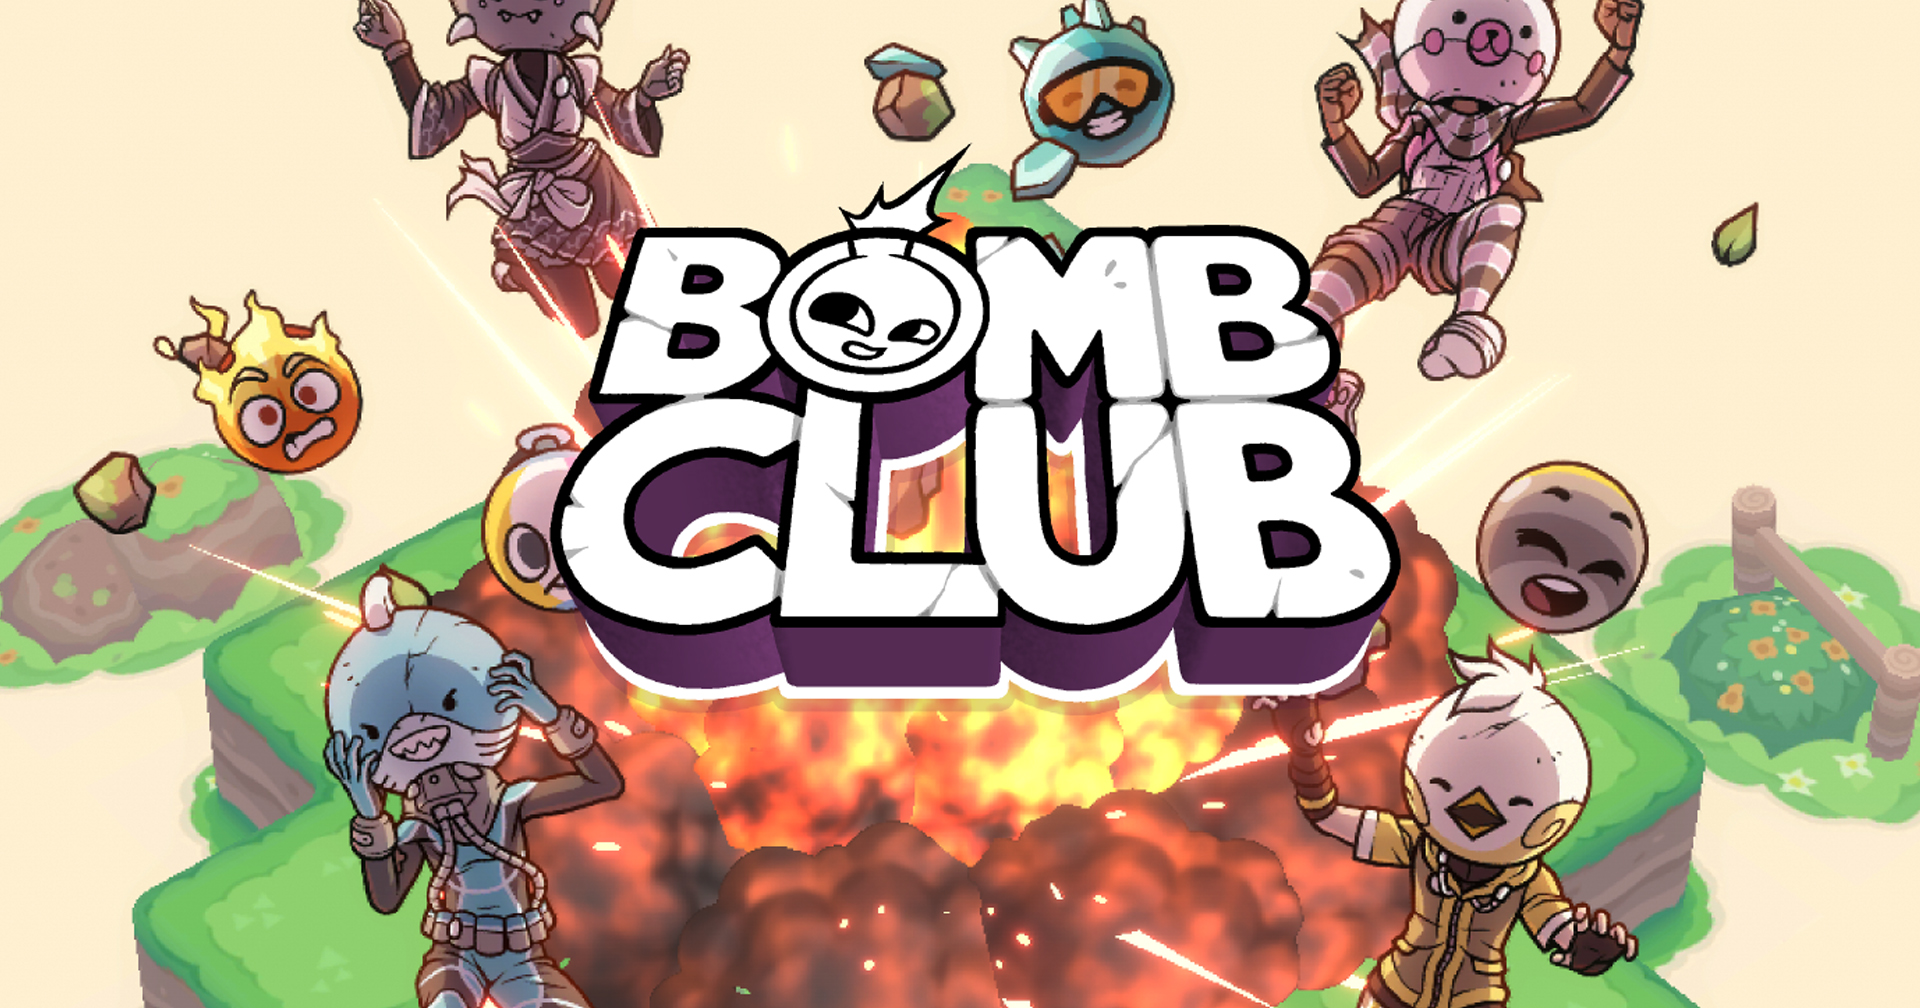 [รีวิวเกม] Bomb Club เกม Puzzle วางระเบิดจุดชนวนลูกโซ่ให้เกลี้ยงแมป